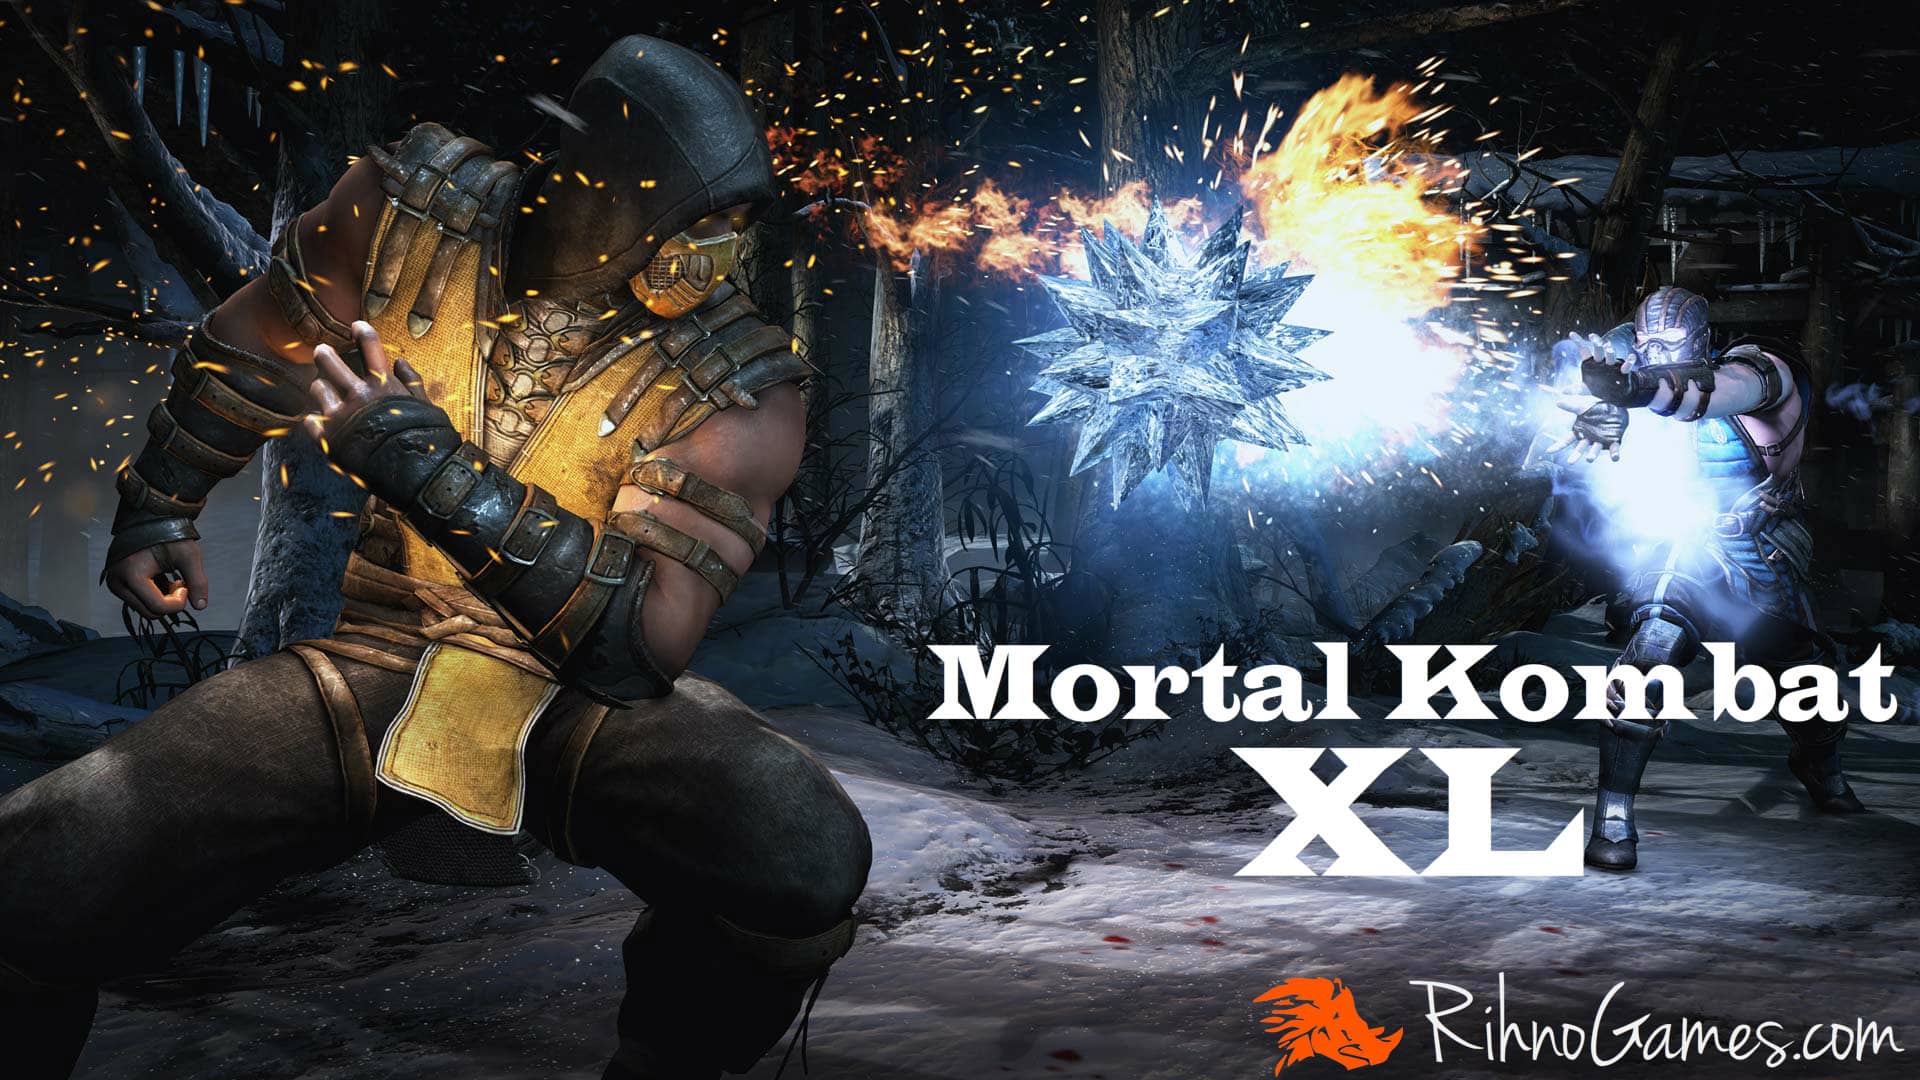 Mortal kombat 11 pc game free download